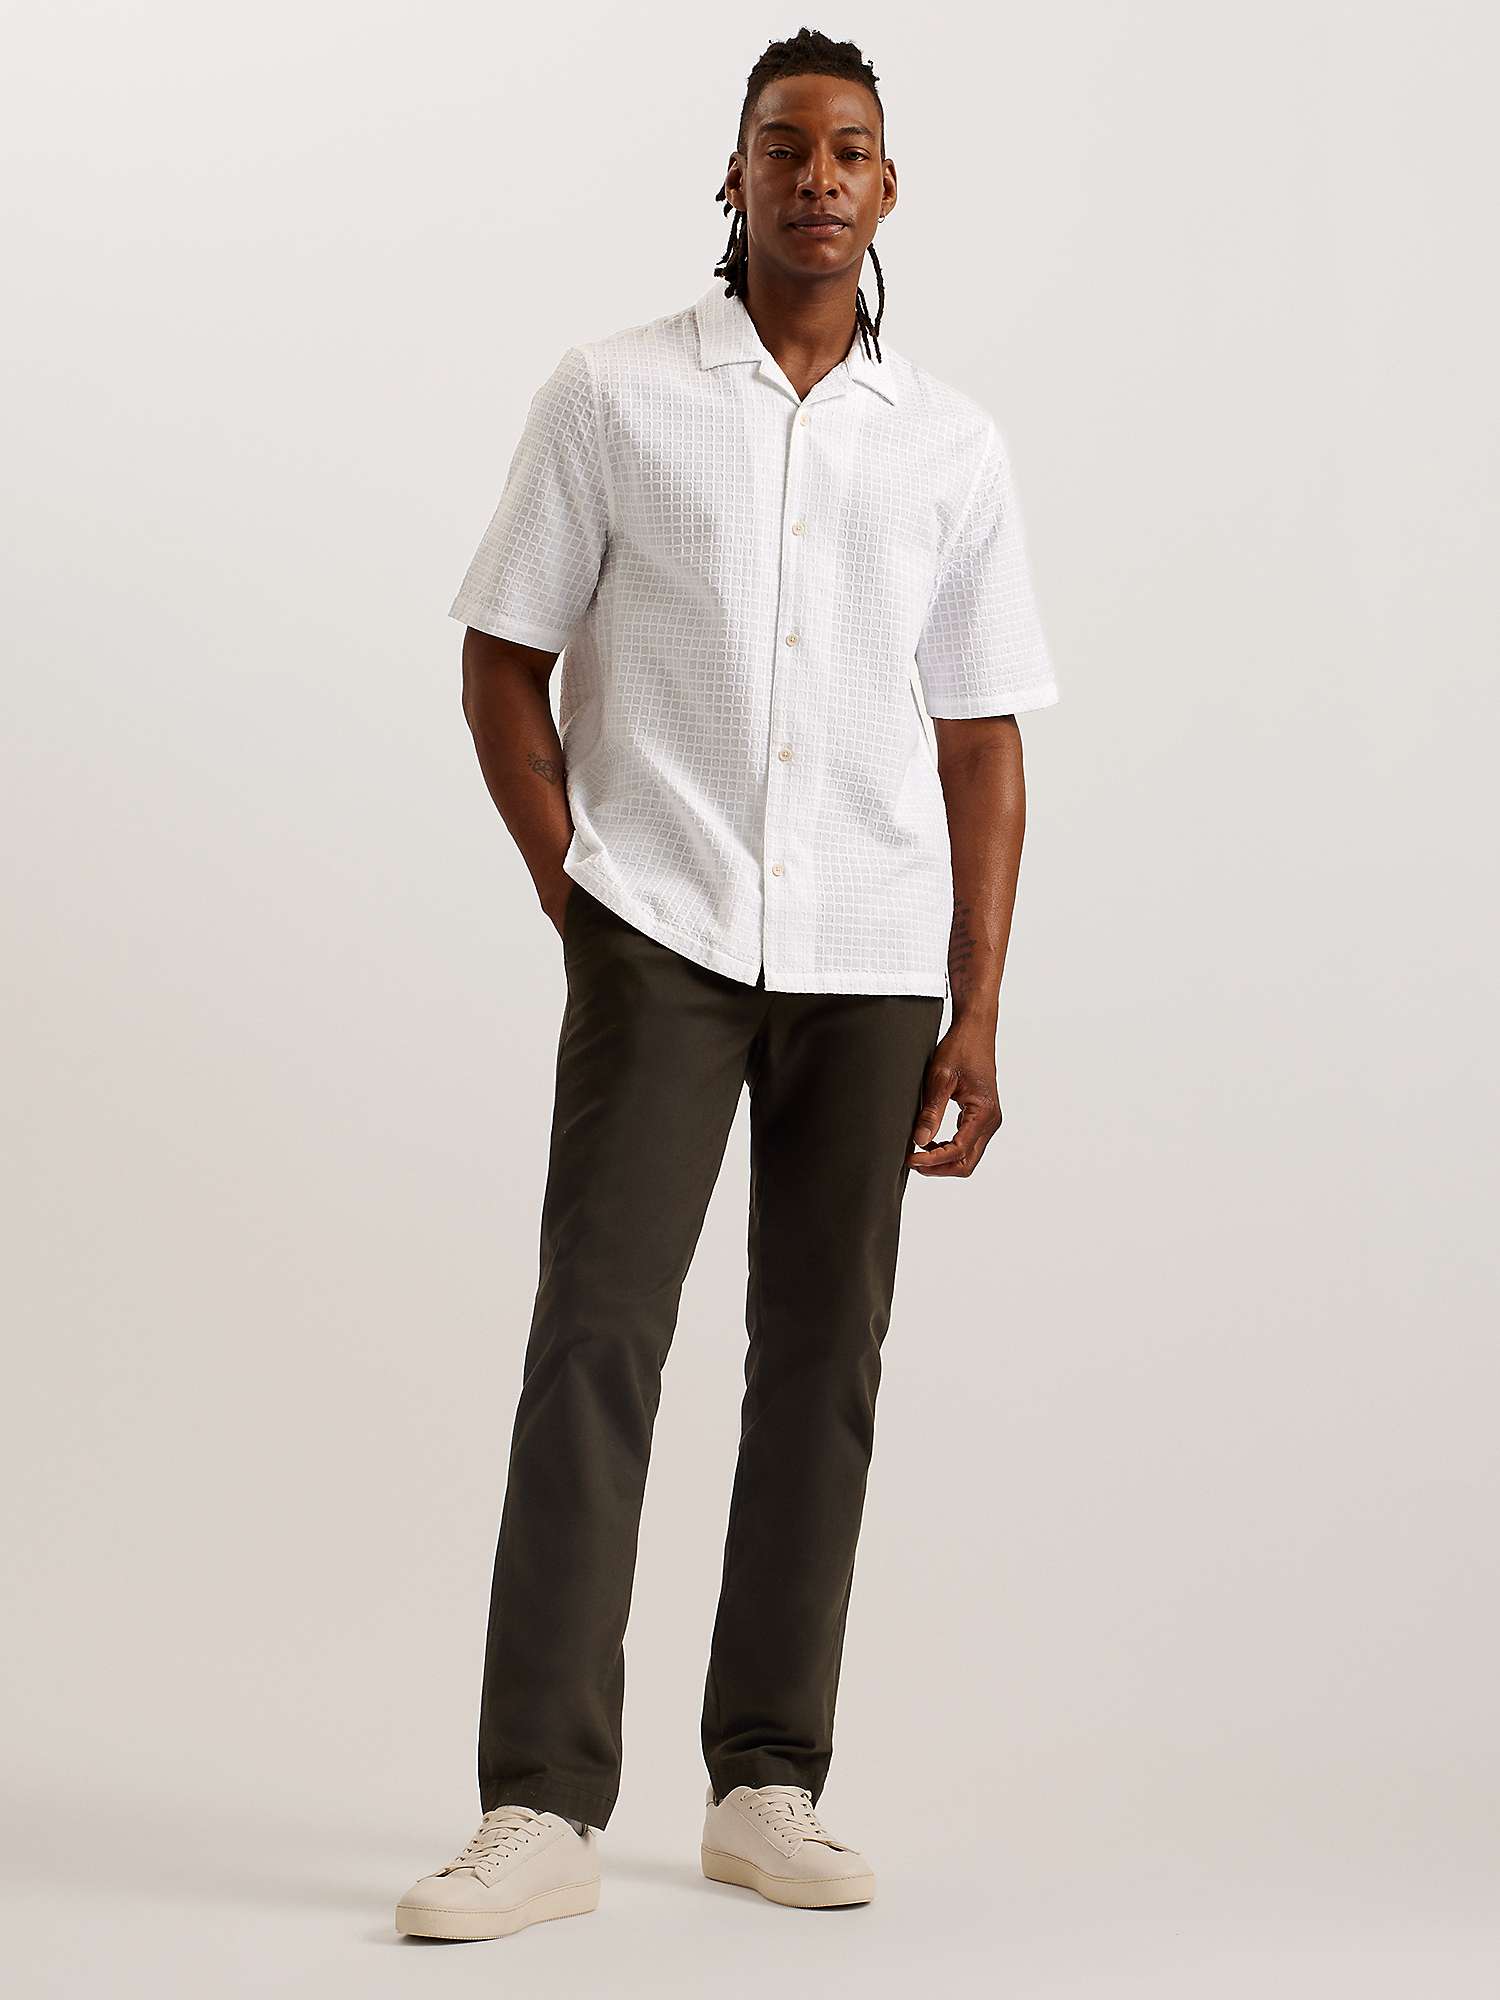 Buy Ted Baker Oise Short Sleeve Textured Shirt, White Online at johnlewis.com